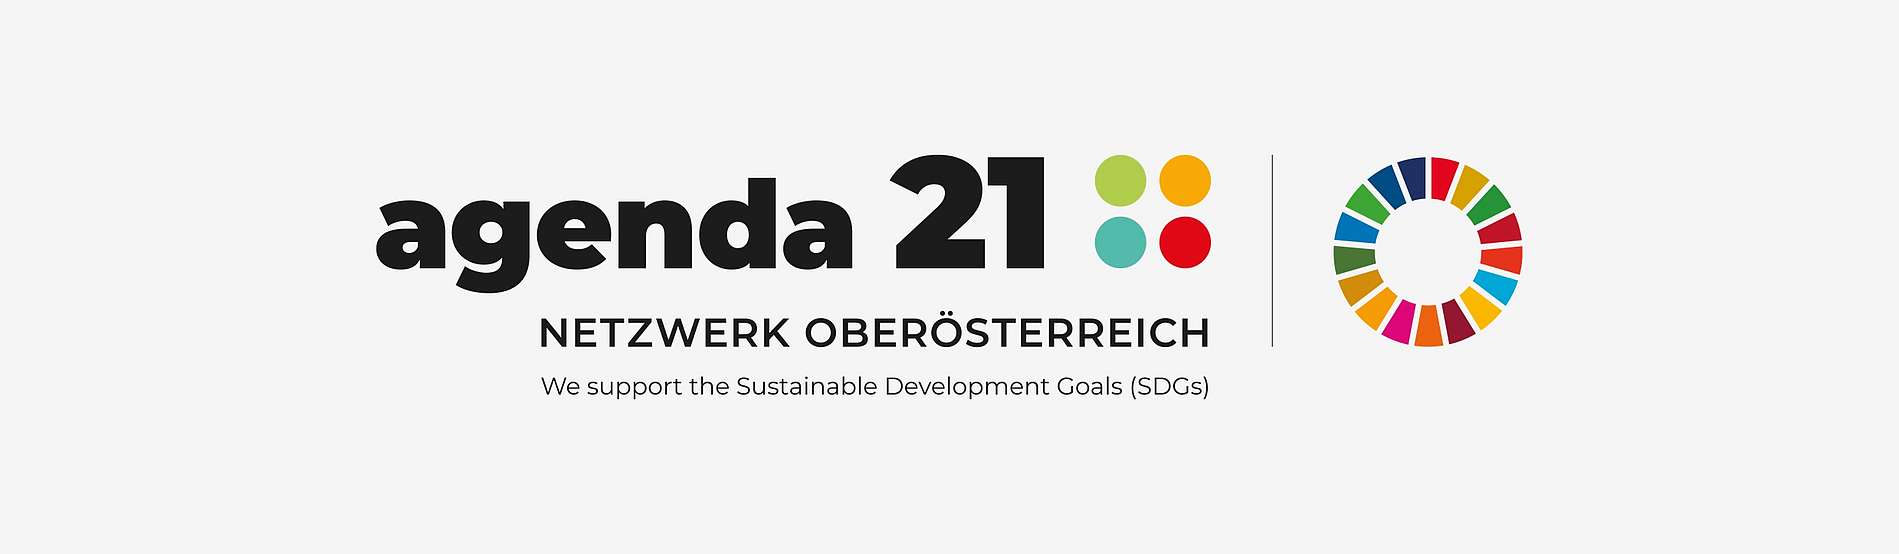 Logo Agenda 21 - Netzwerk Oberösterreich und SDGs-Farbenrad: Das Agenda 21 - Netzwerk Oberösterreich unterstützt die Umsetzung der SDGs.